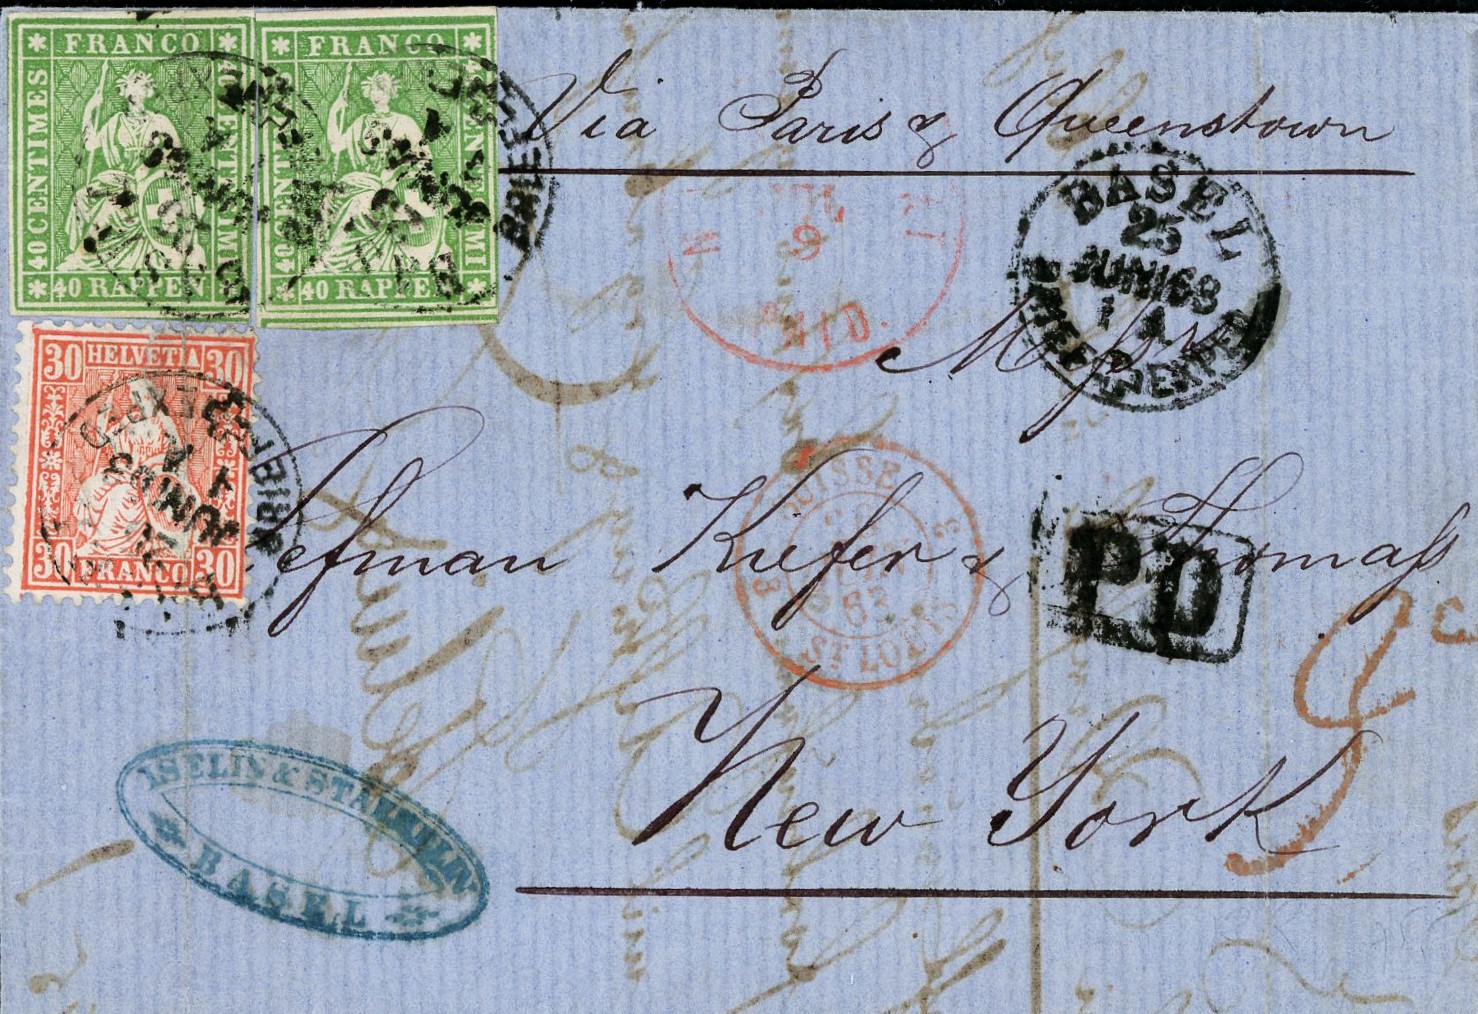 Seltene Misch-Frankatur Strubeli/sitz. Helv. gezähnt: Juni 1863: 40 Rp. Strubeli, 2x auf Brief mit sitz. Helv. 30 Rp. zinnober